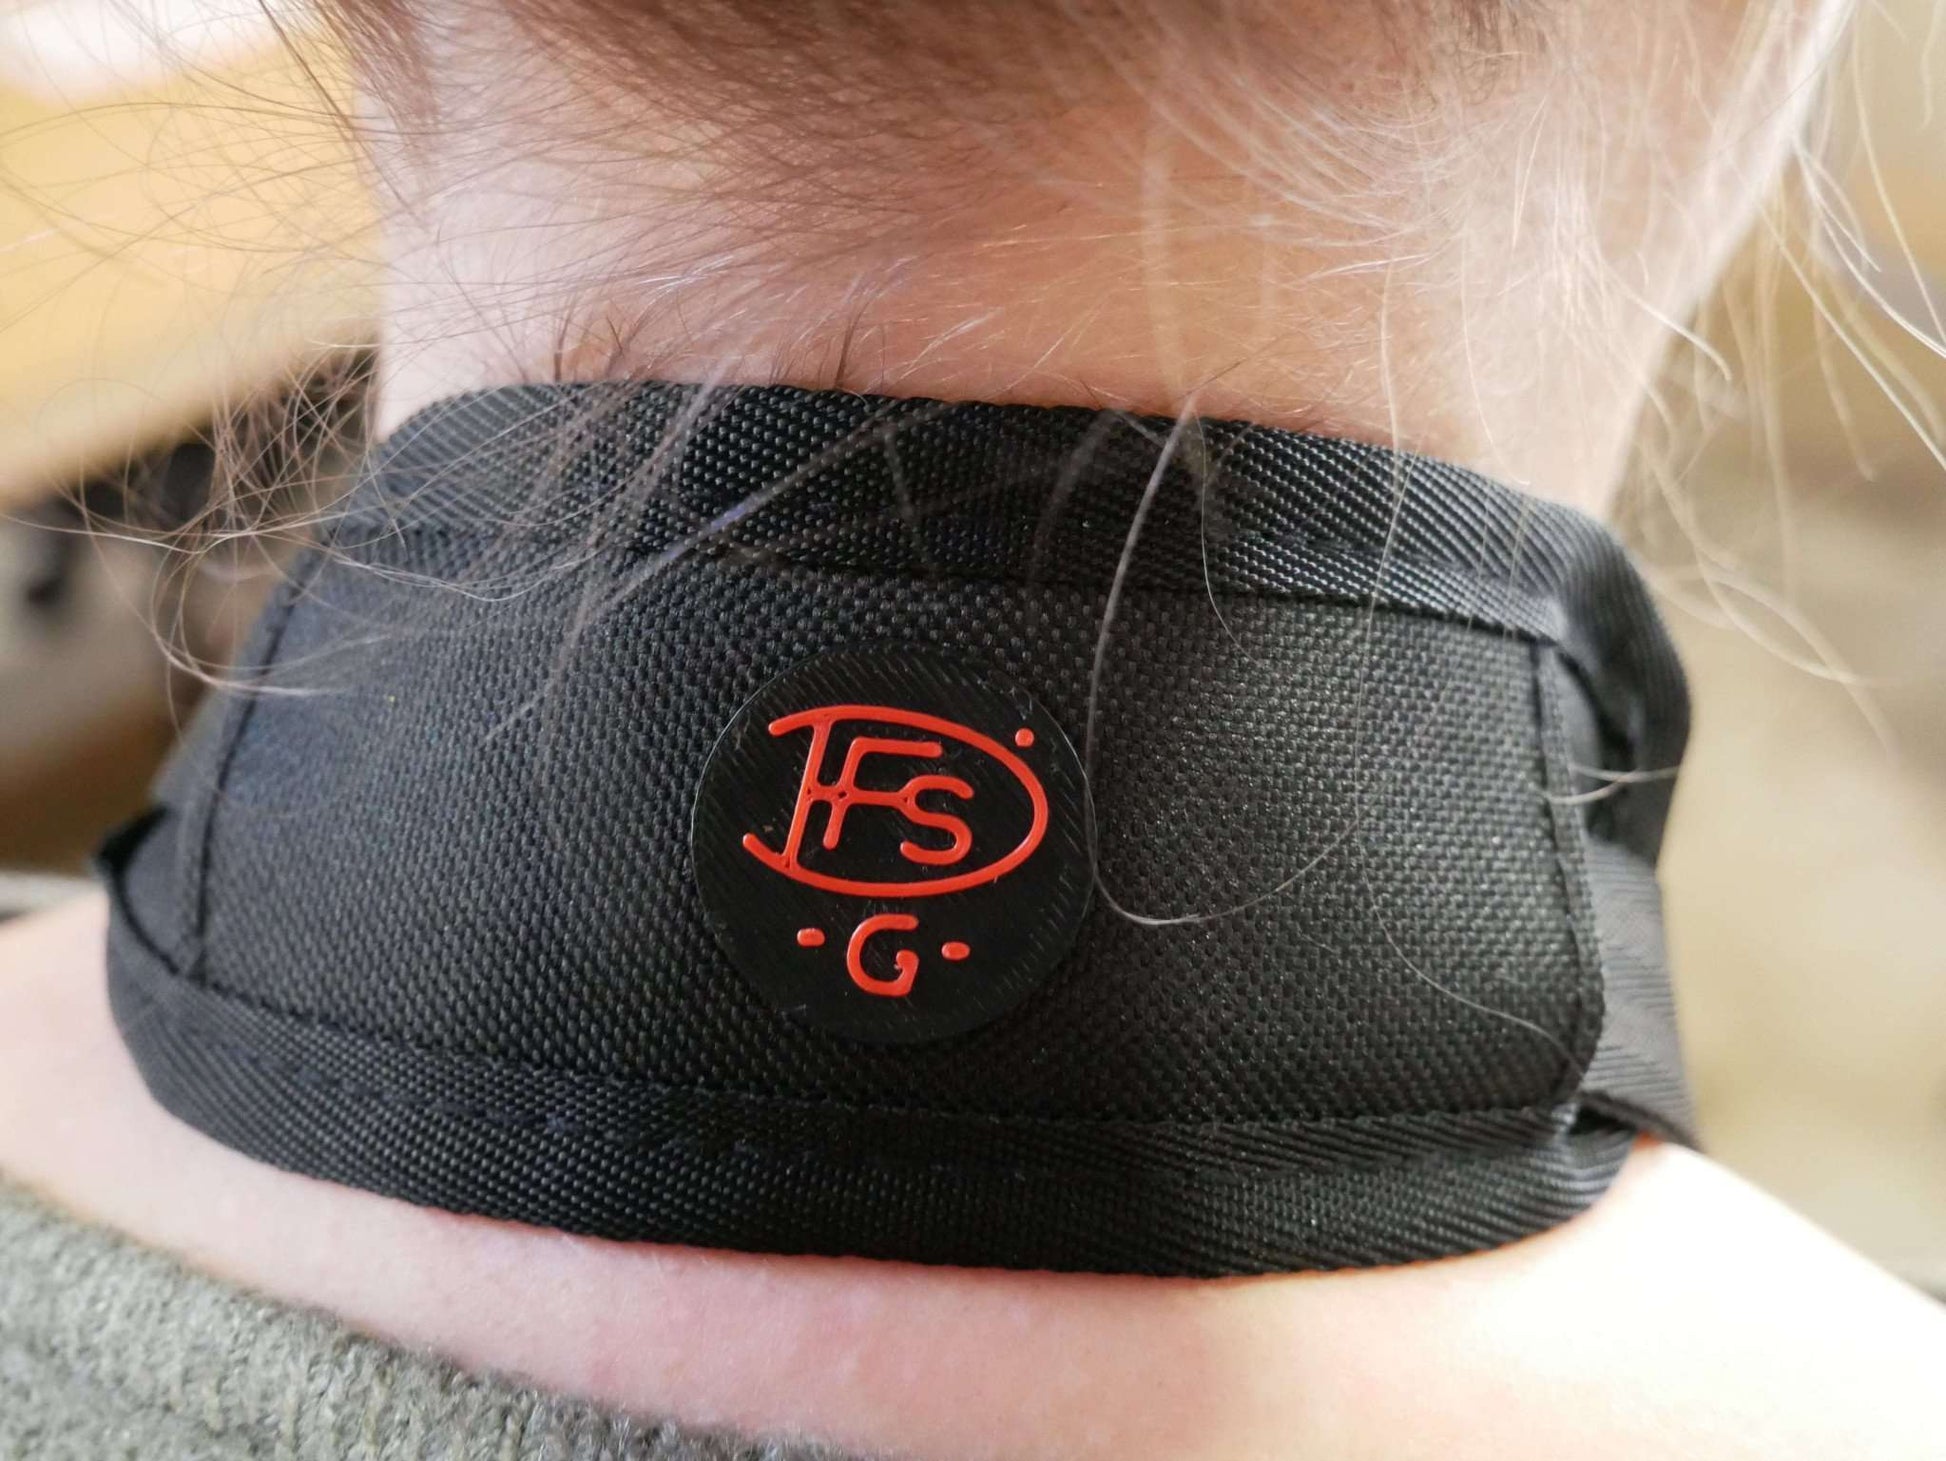 Nähere Ansicht des getragenen Polsters mit DFS-G- Logo angebracht an den Halter mit Halsgurt